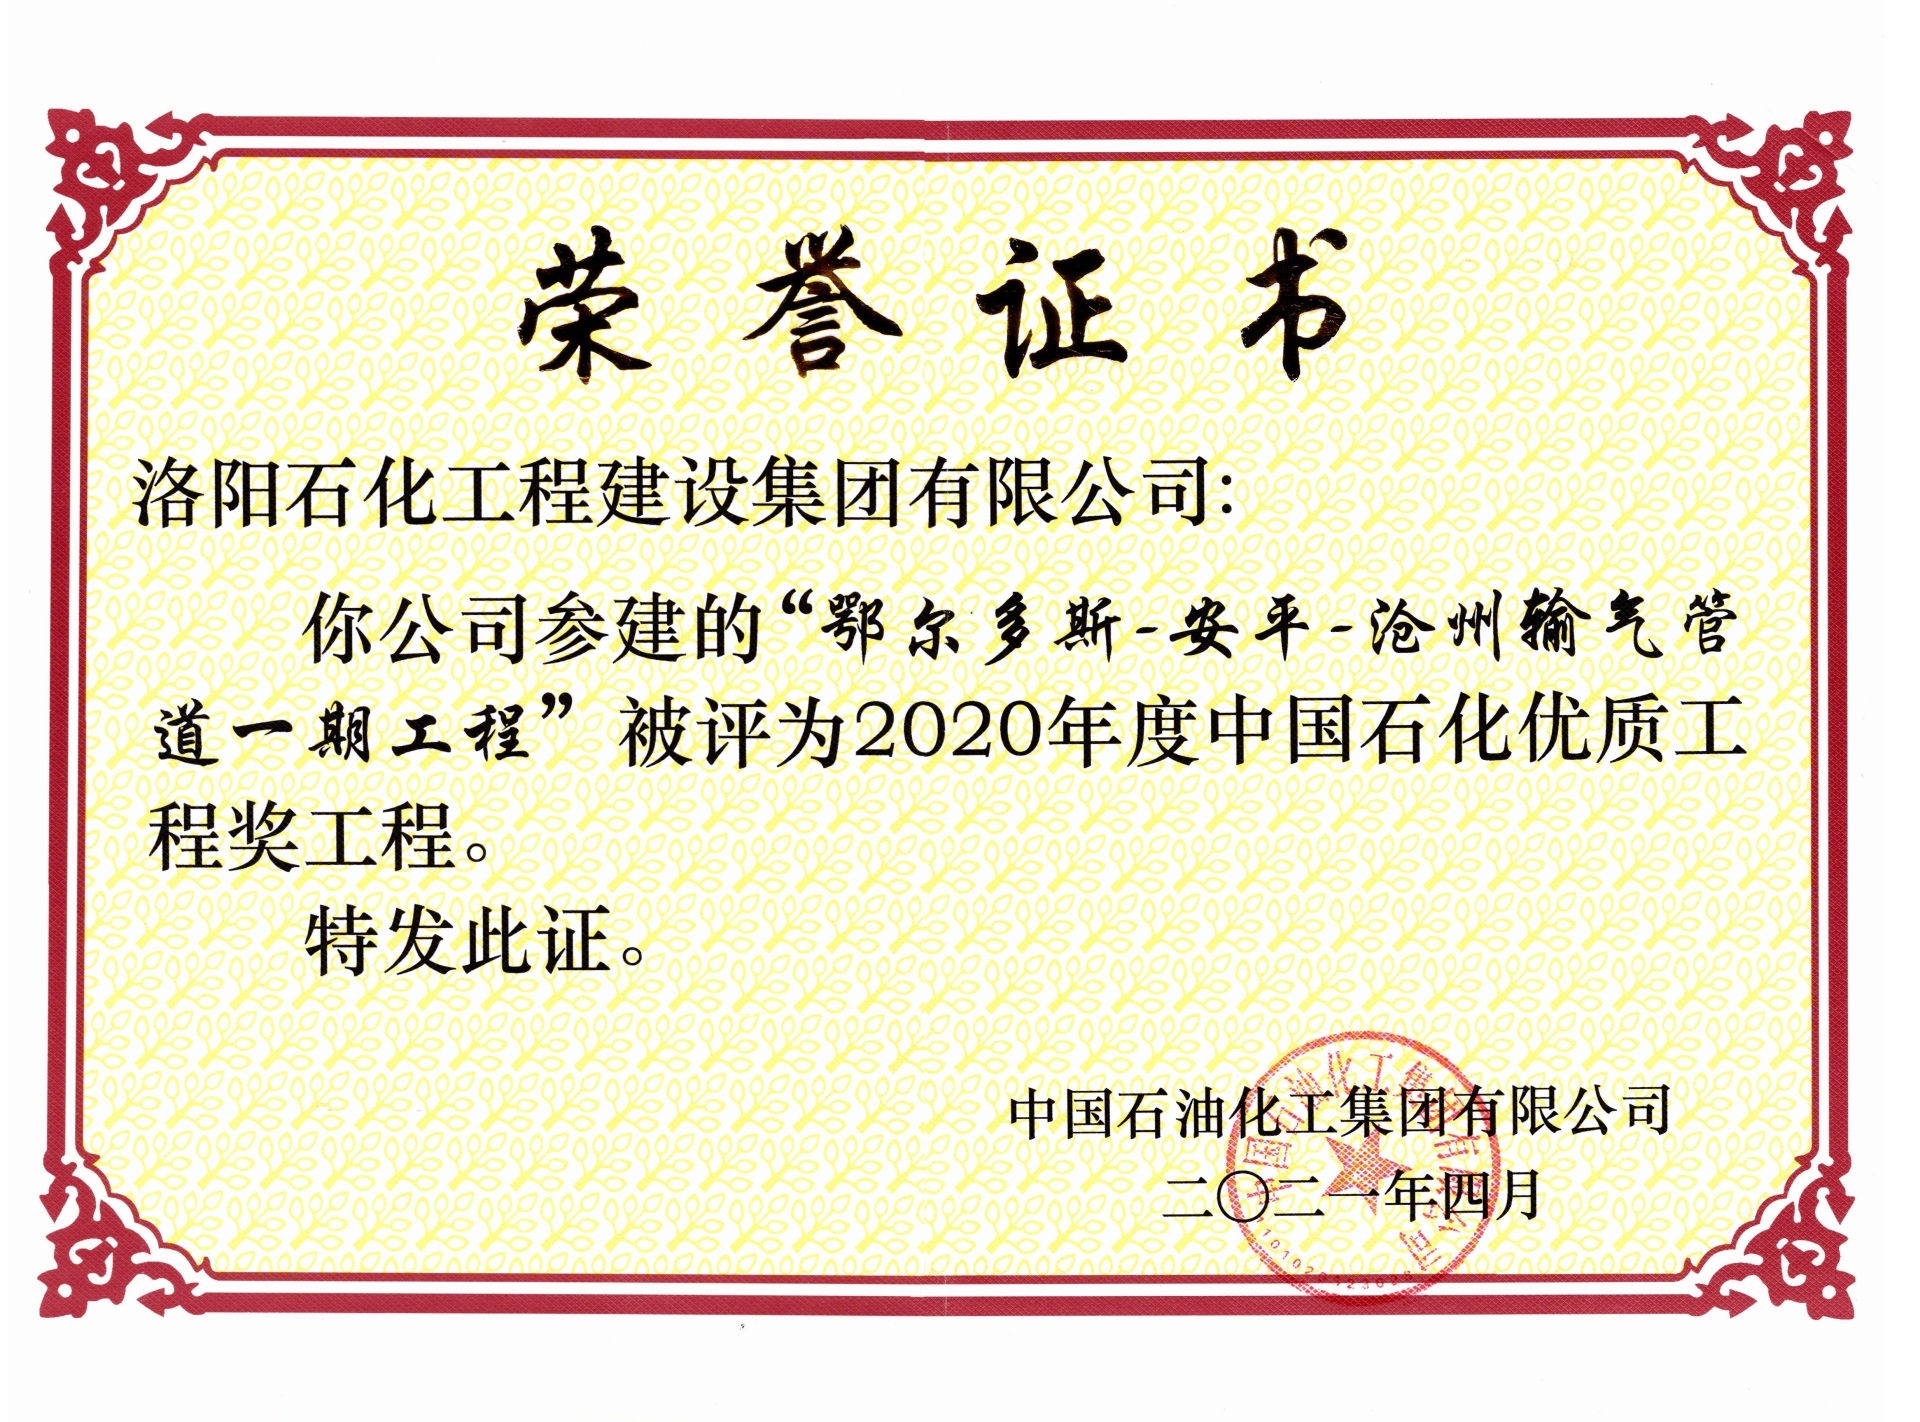 2020年度中国石化优质工程奖——鄂安沧输气管道一期工程